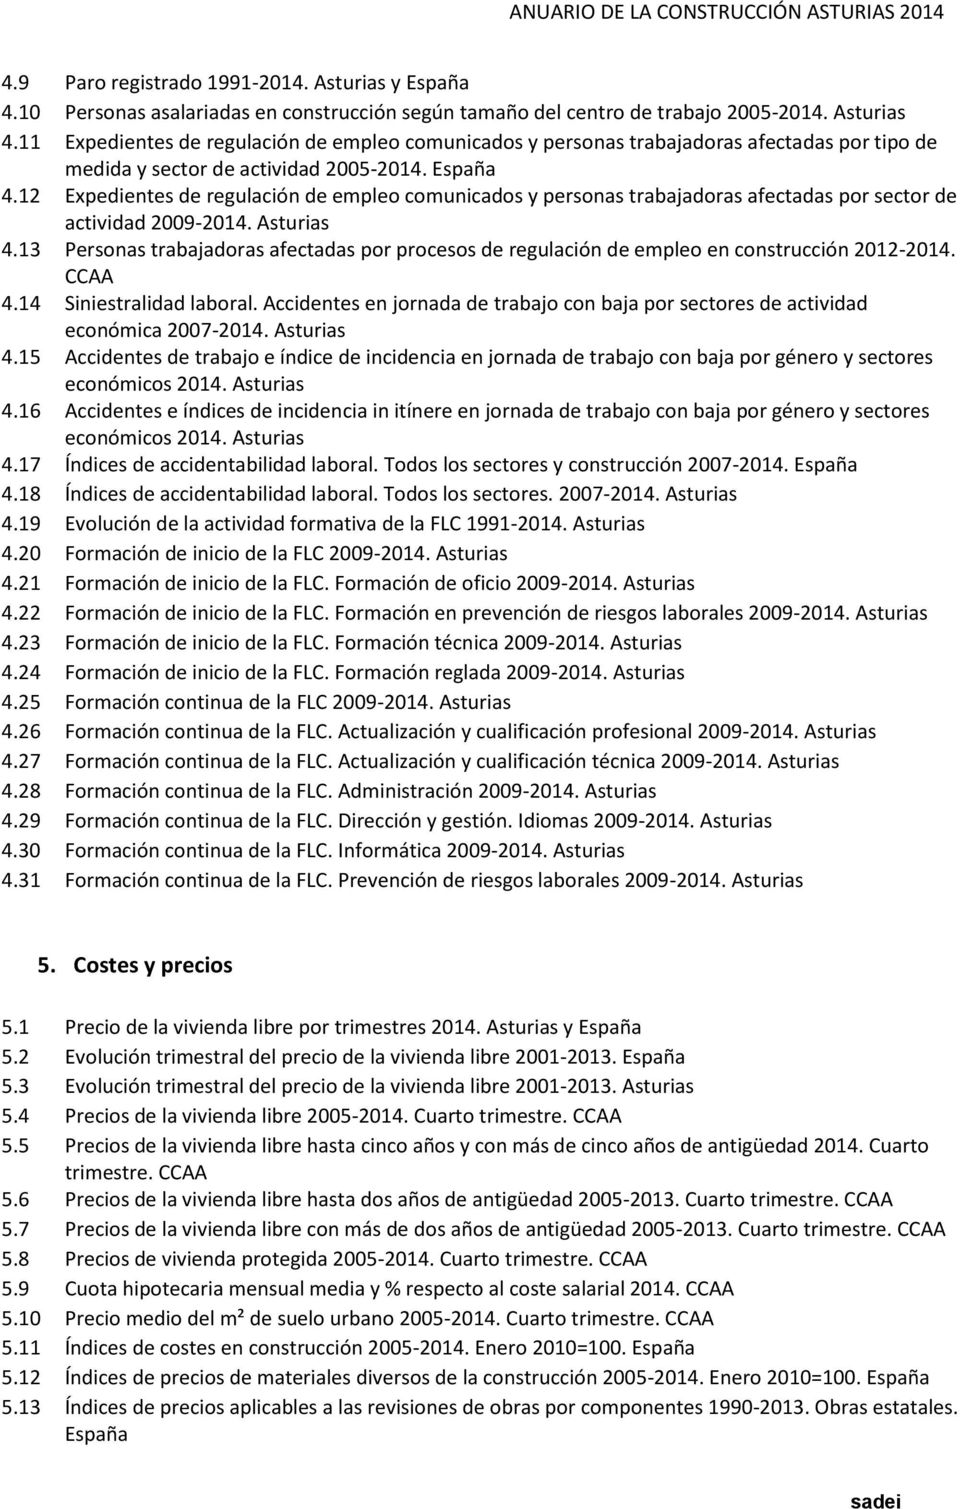 12 Expedientes de regulación de empleo comunicados y personas trabajadoras afectadas por sector de actividad 2009-2014. Asturias 4.